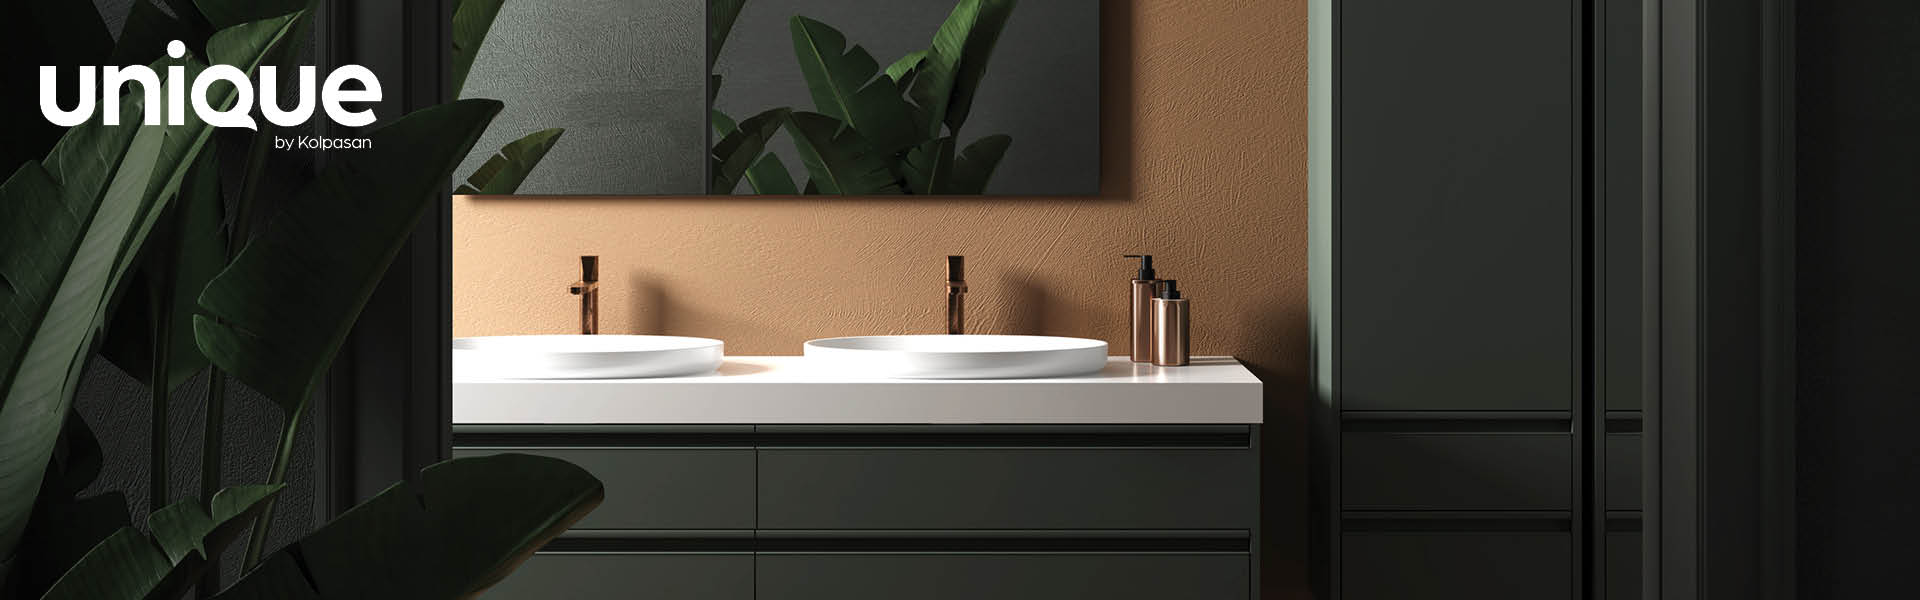 Iskoristite svaki centimetar svoje kupaonice - Unique by Kolpasan